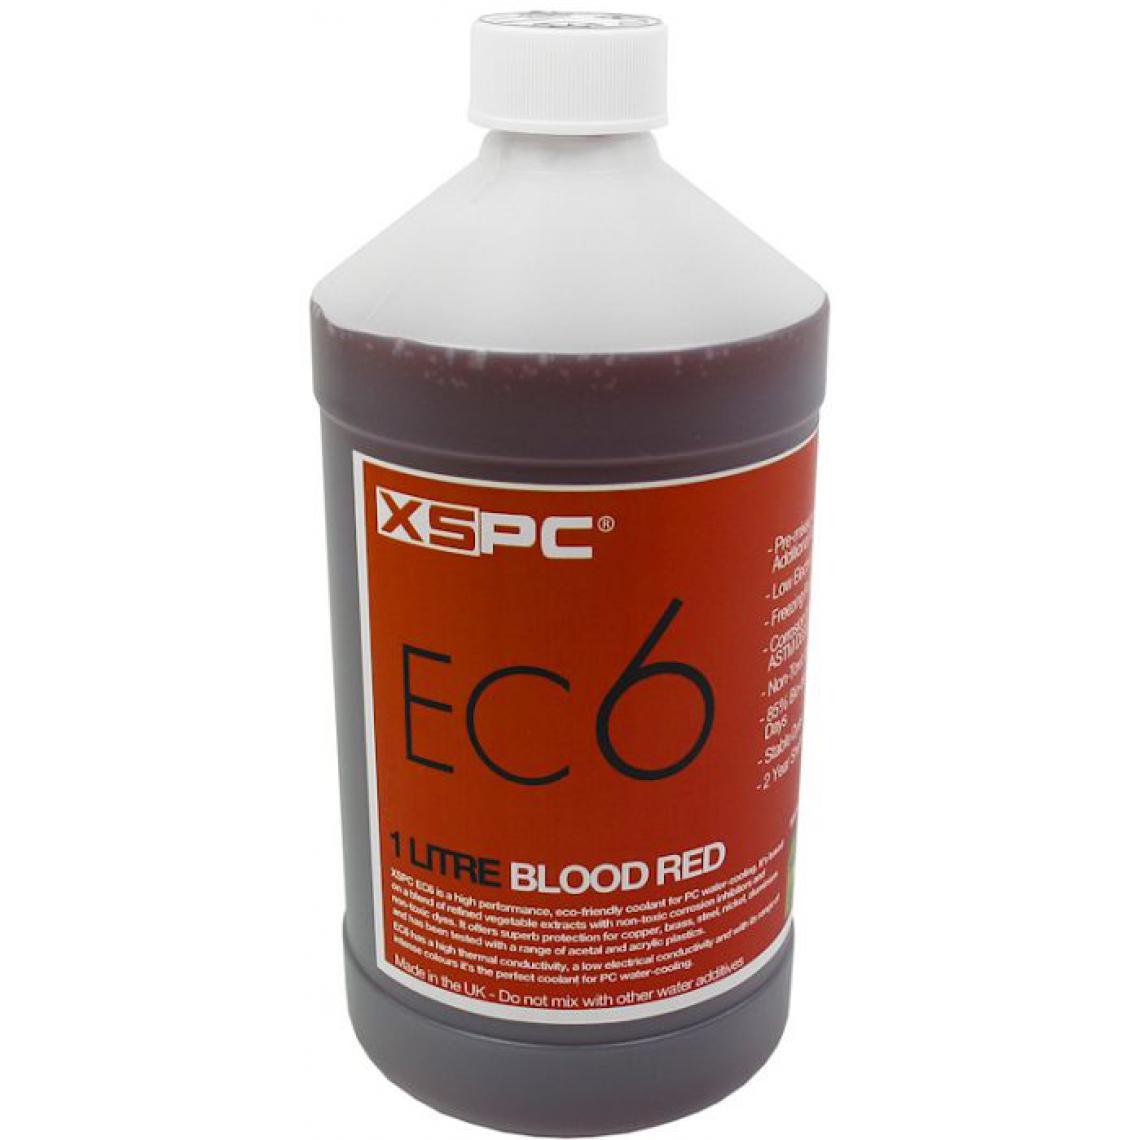 Xspc - EC6, 1 litre - rouge sang - Ventirad carte graphique